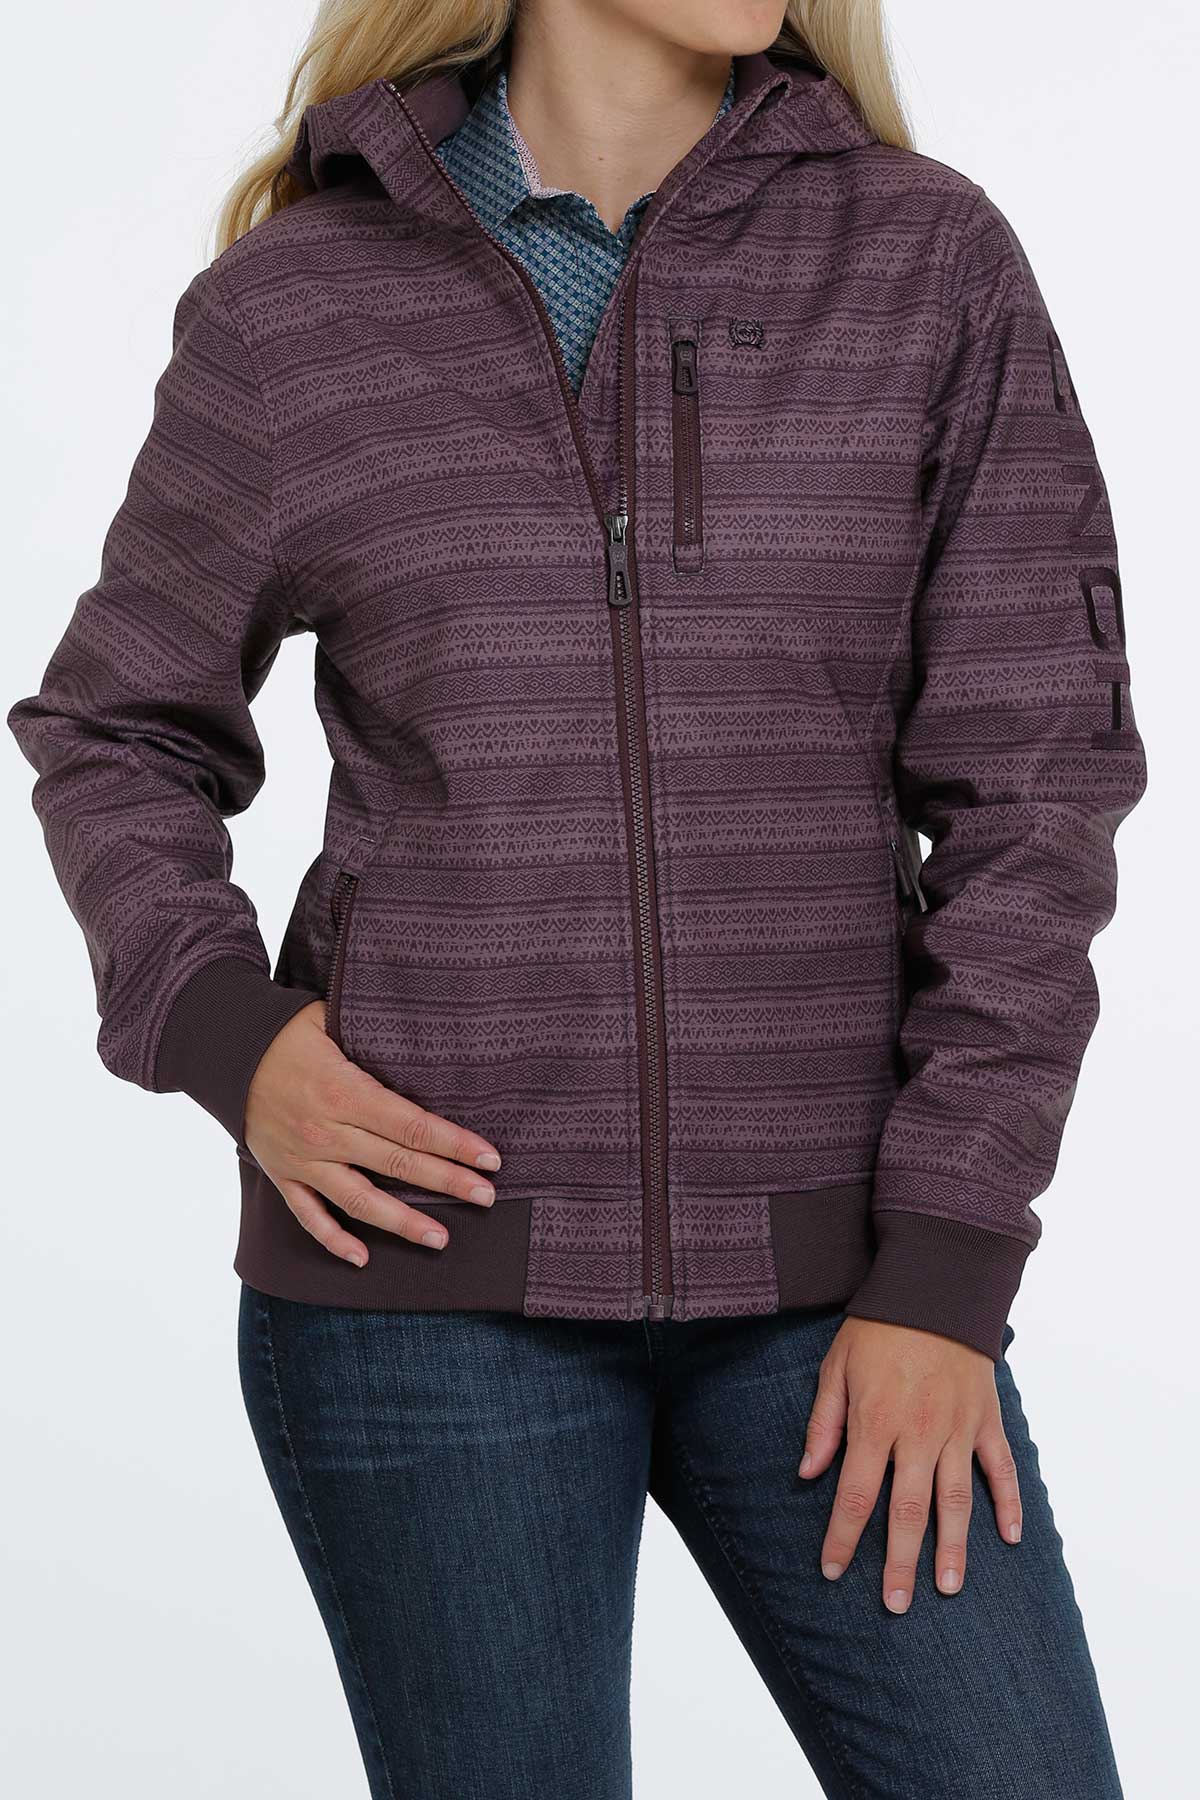 Cinch Women's Softshell Bonded Hooded Purple Striped Jacket